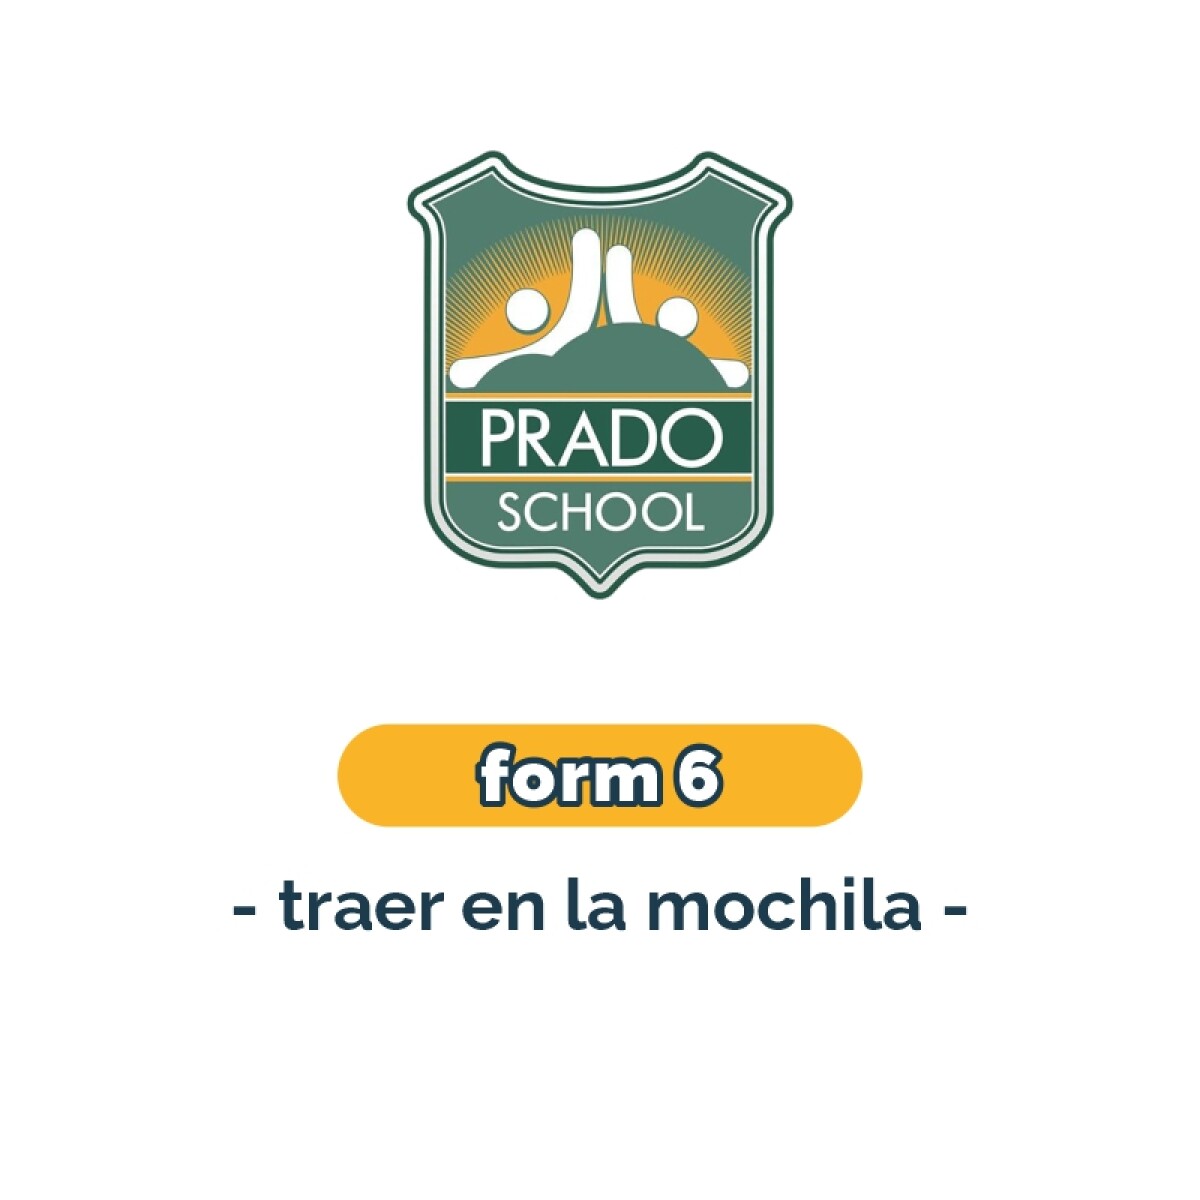 Lista de materiales - Primaria Form 6 Prado School 